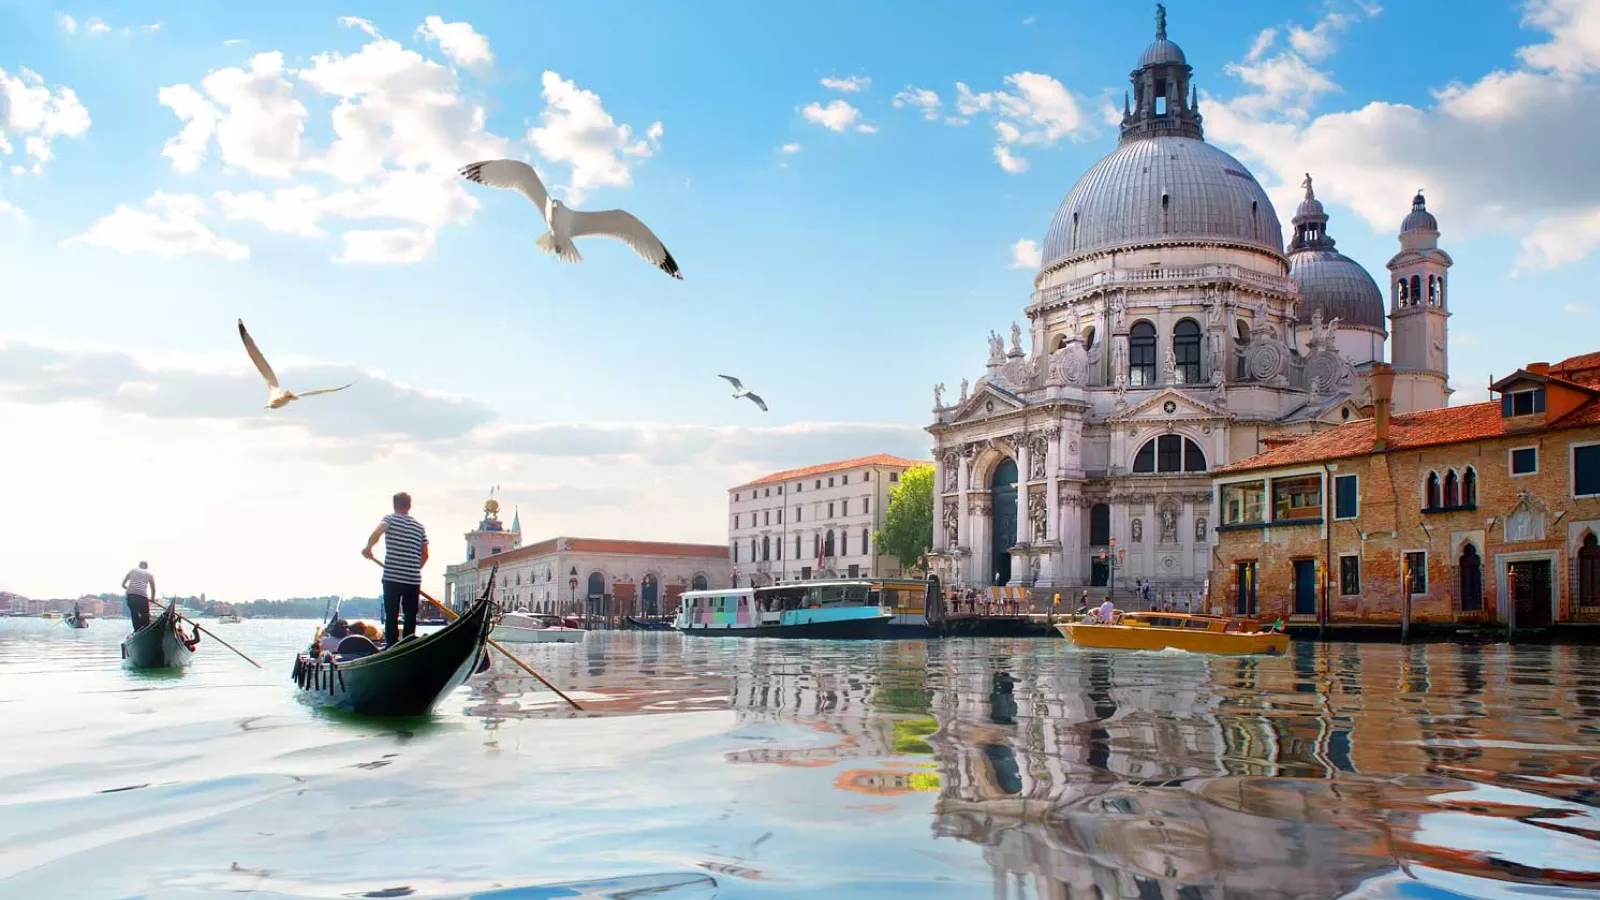 Turizmi i lëmoshës në Venecia, lypësit fitojnë deri në 1 mijë euro në pak ditë